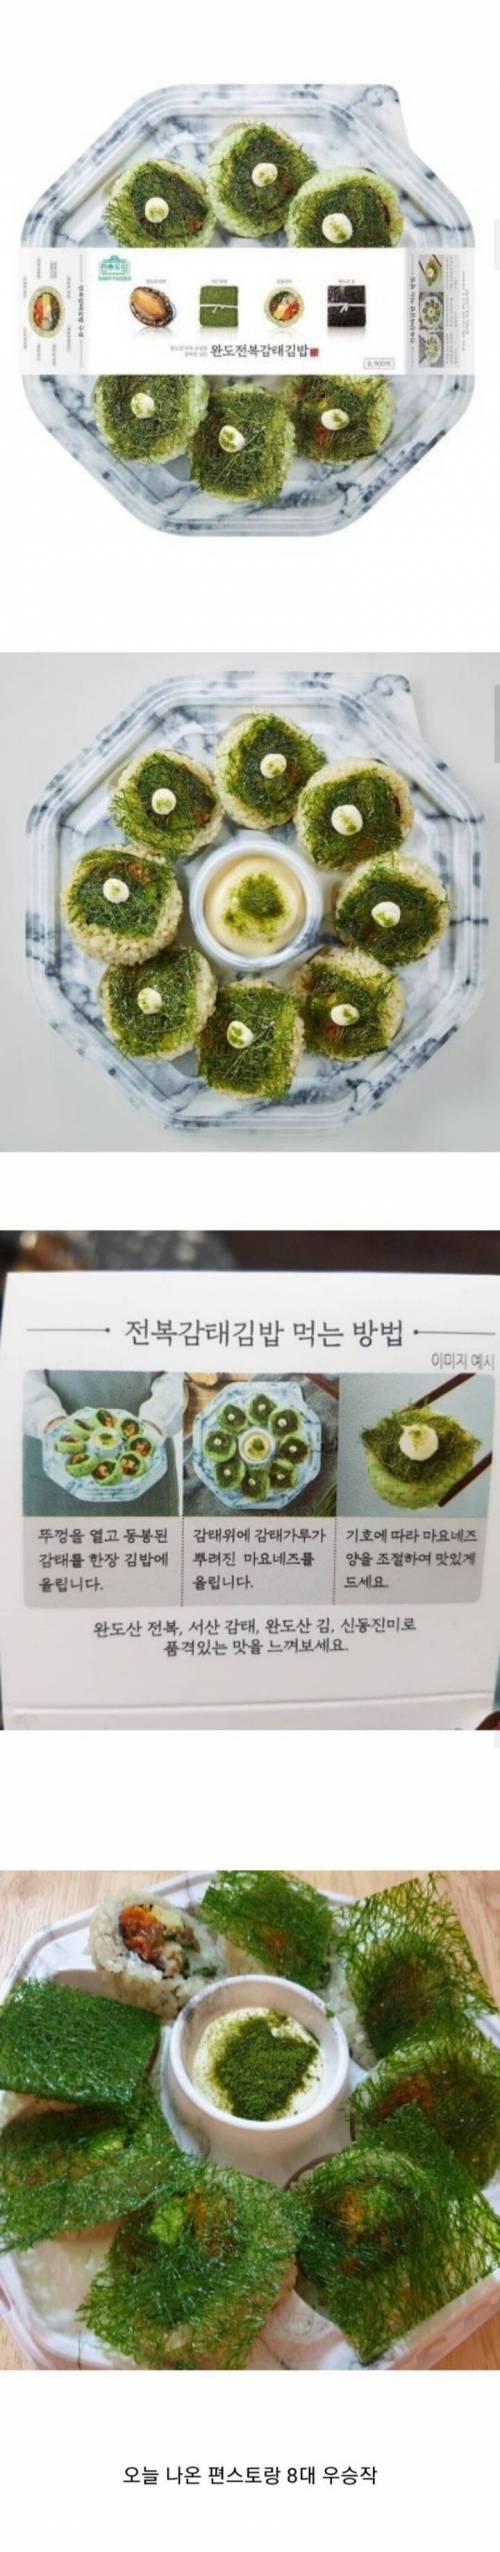 편의점에 나온 가장 비싼 김밥.jpg